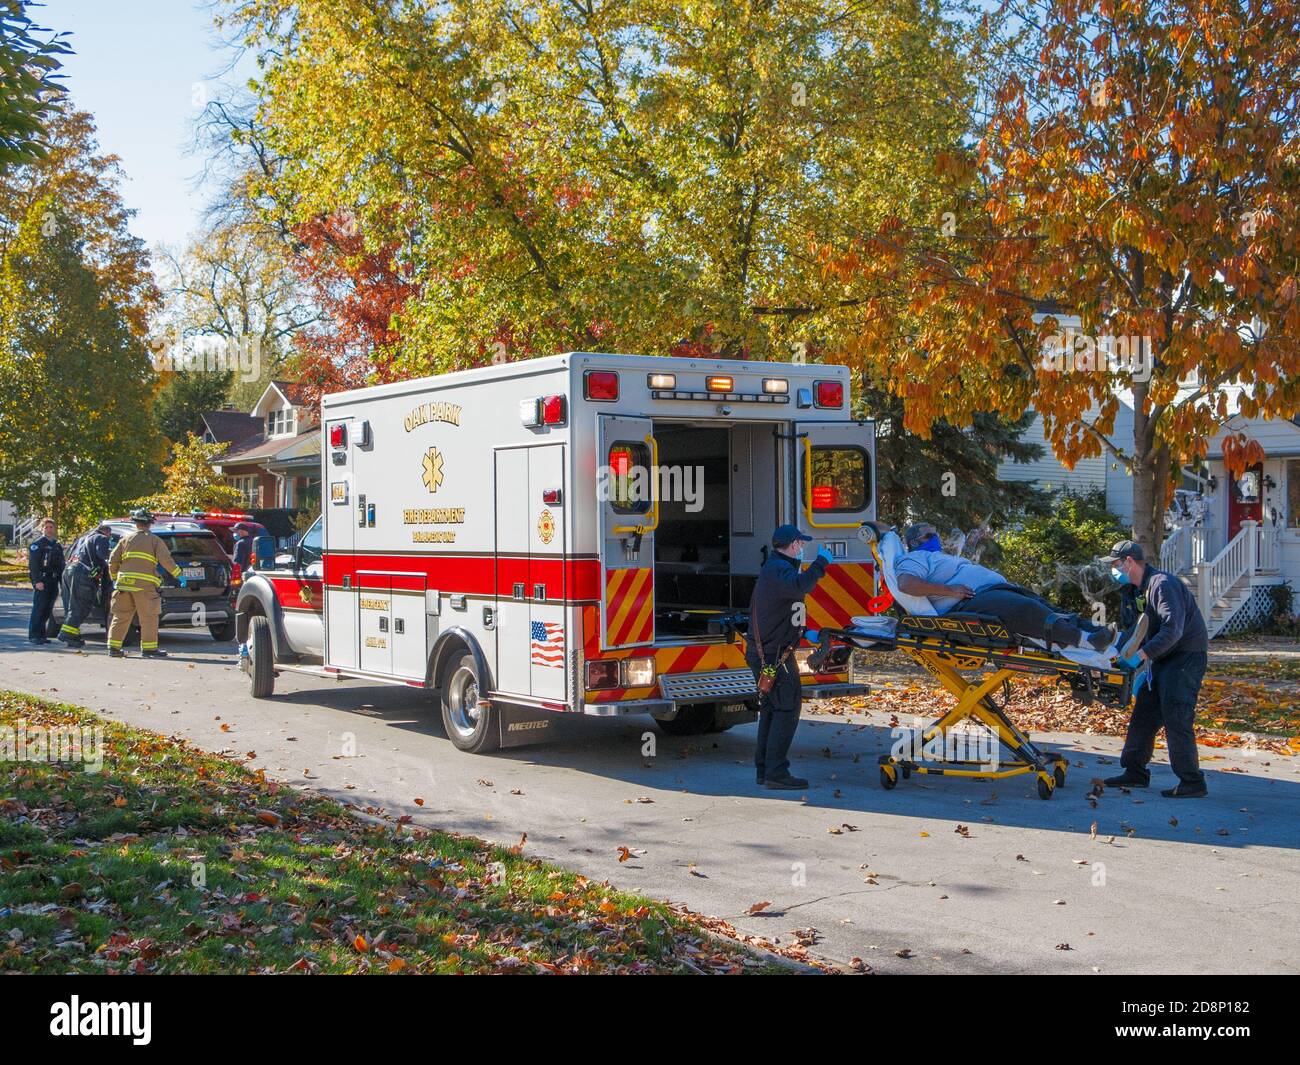 Oak Park, Illinois, Stati Uniti. 31 ottobre 2020. I paramedici caricano una vittima di un incidente automobilistico in un'ambulanza durante la pandemia COVID-19. Foto Stock